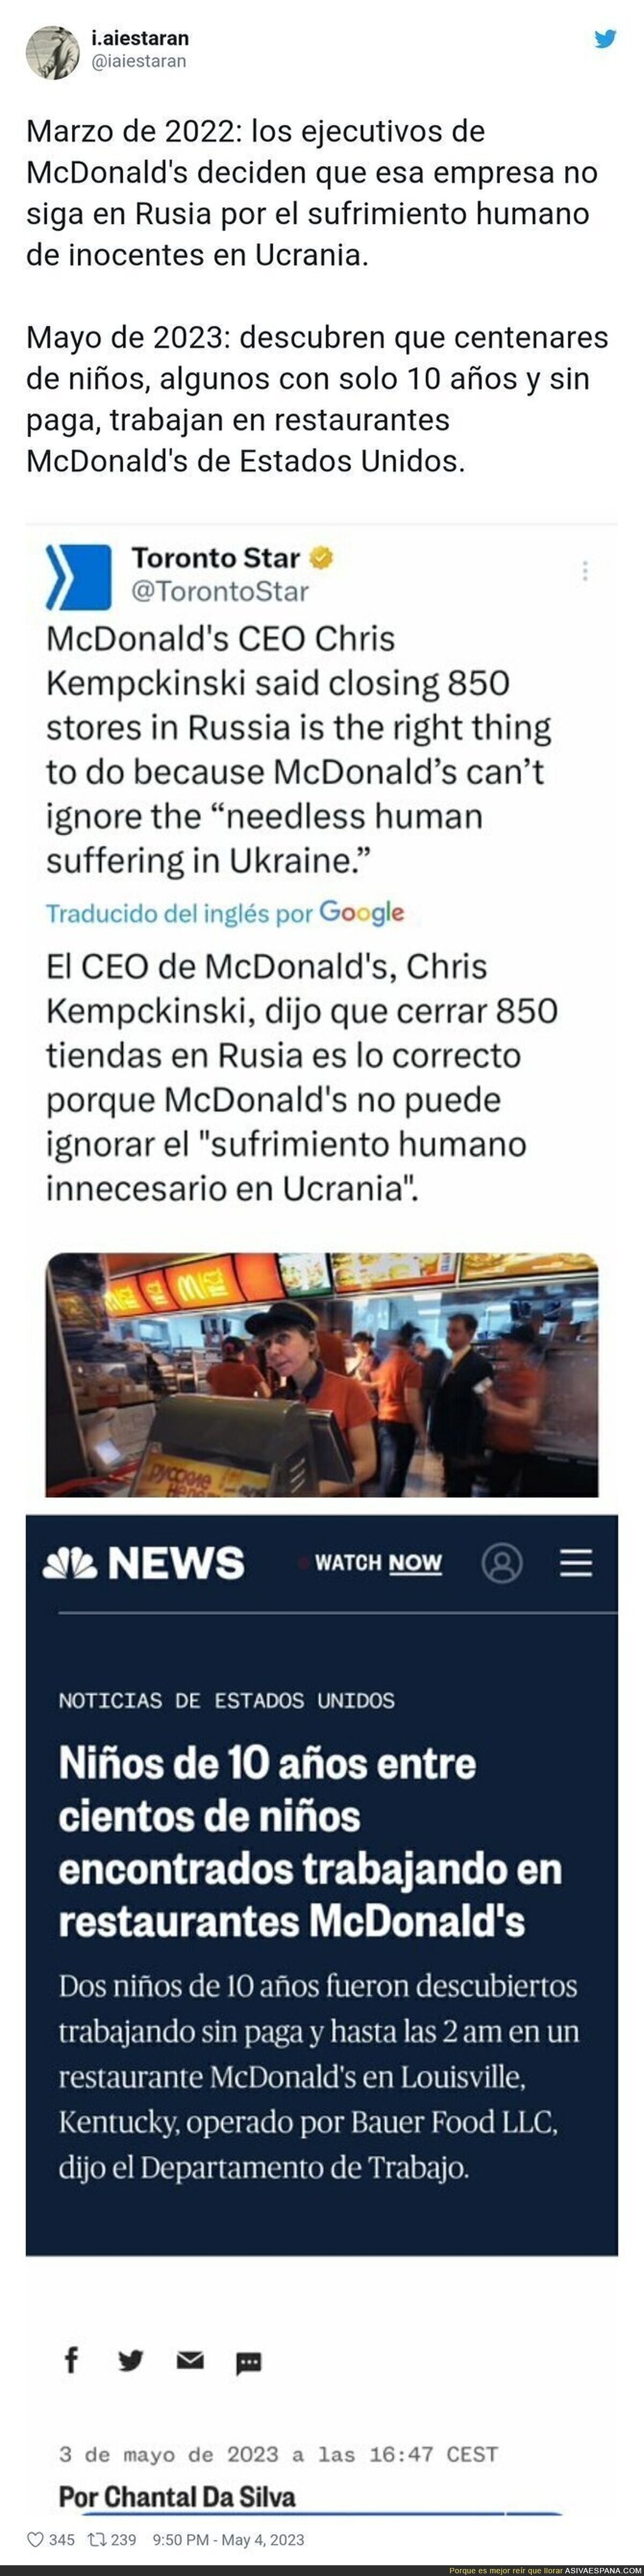 Así funciona McDonald's y su doble rasero depende si es Rusia o Estados Unidos